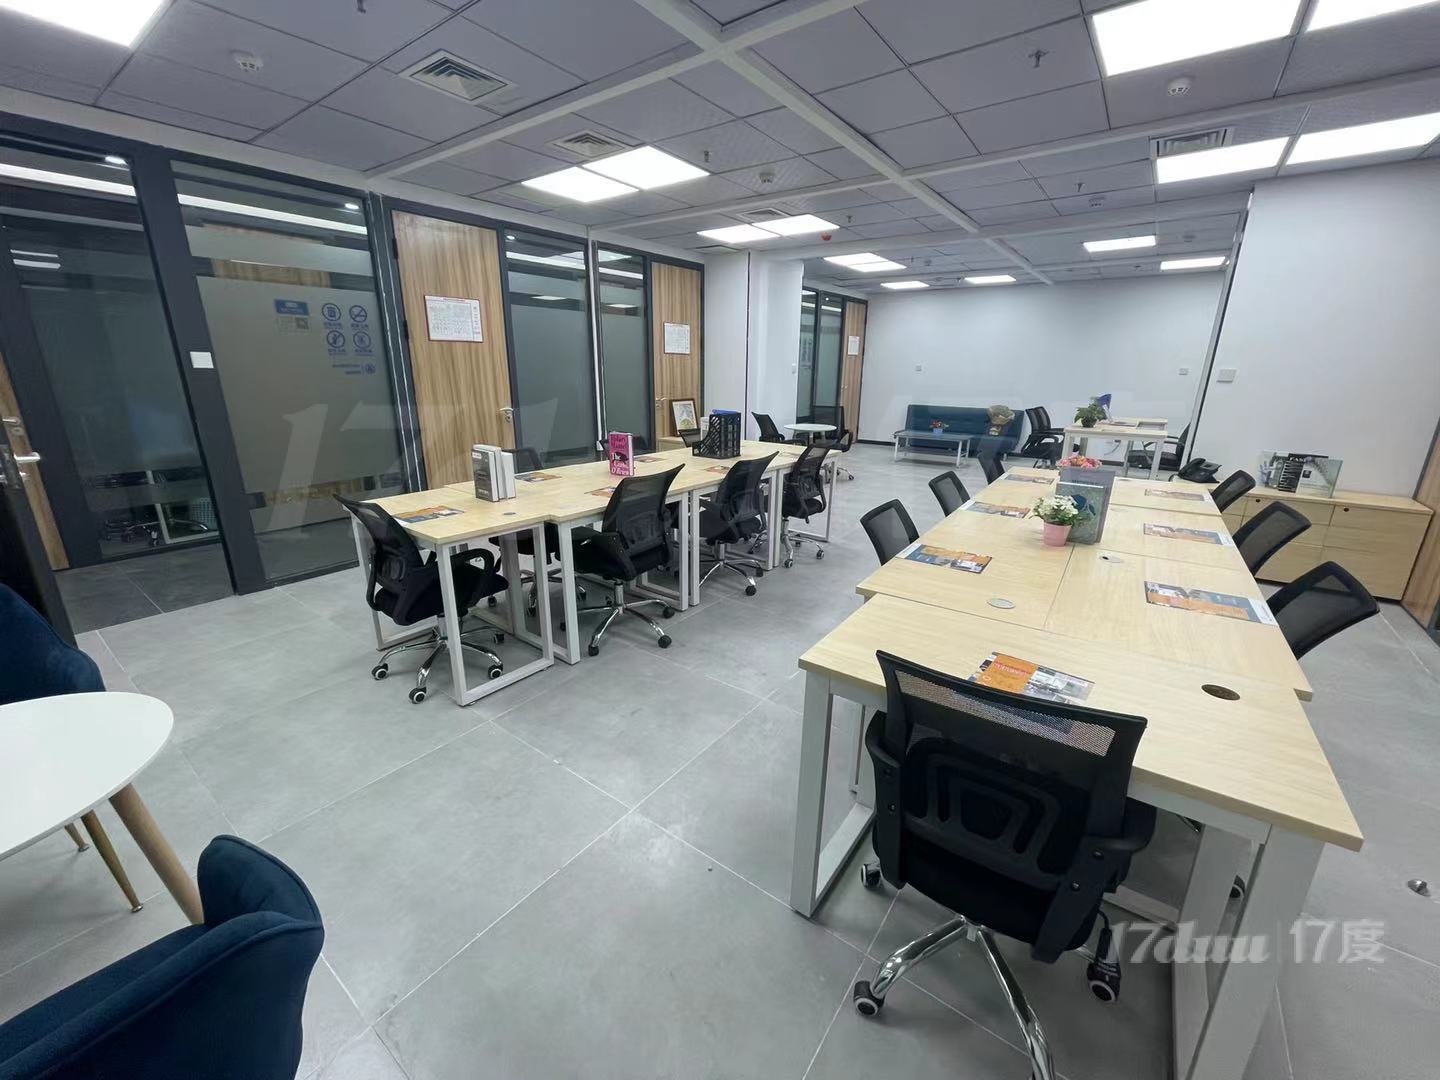 珠江新城 办公室 大开间 靠窗户型 提包入驻 租金划算